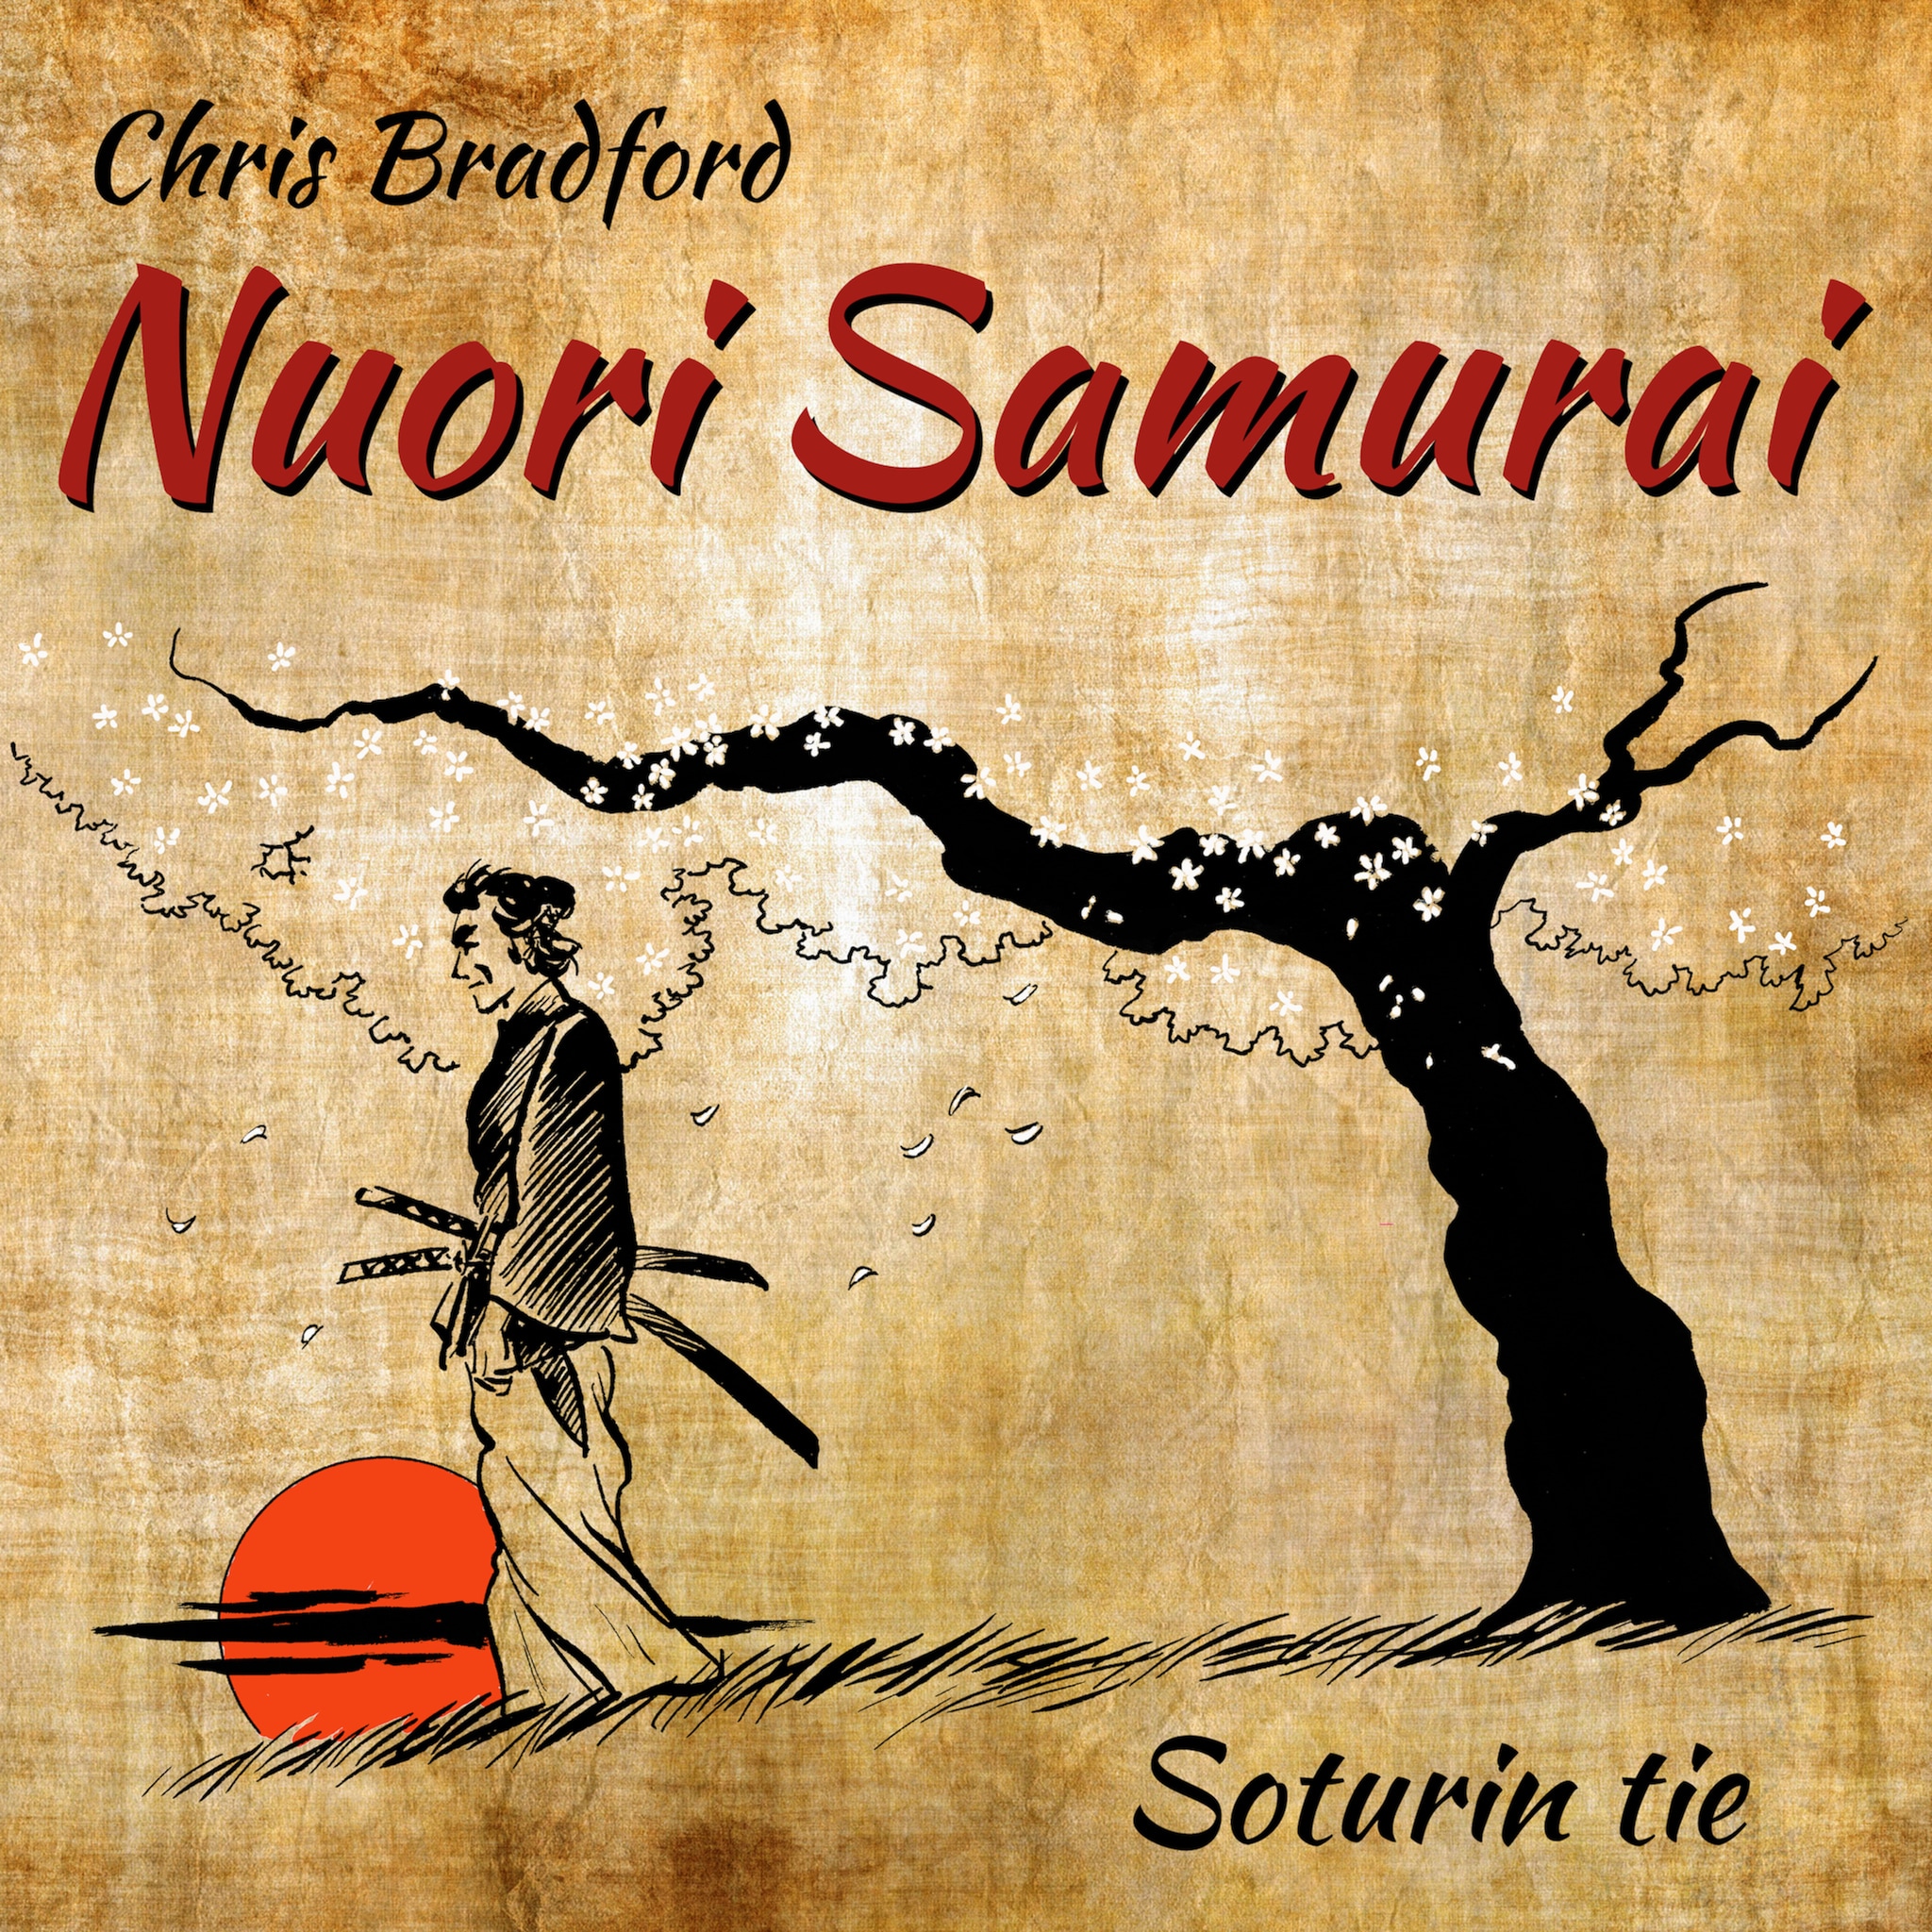 Nuori samurai,Soturin tie ilmaiseksi